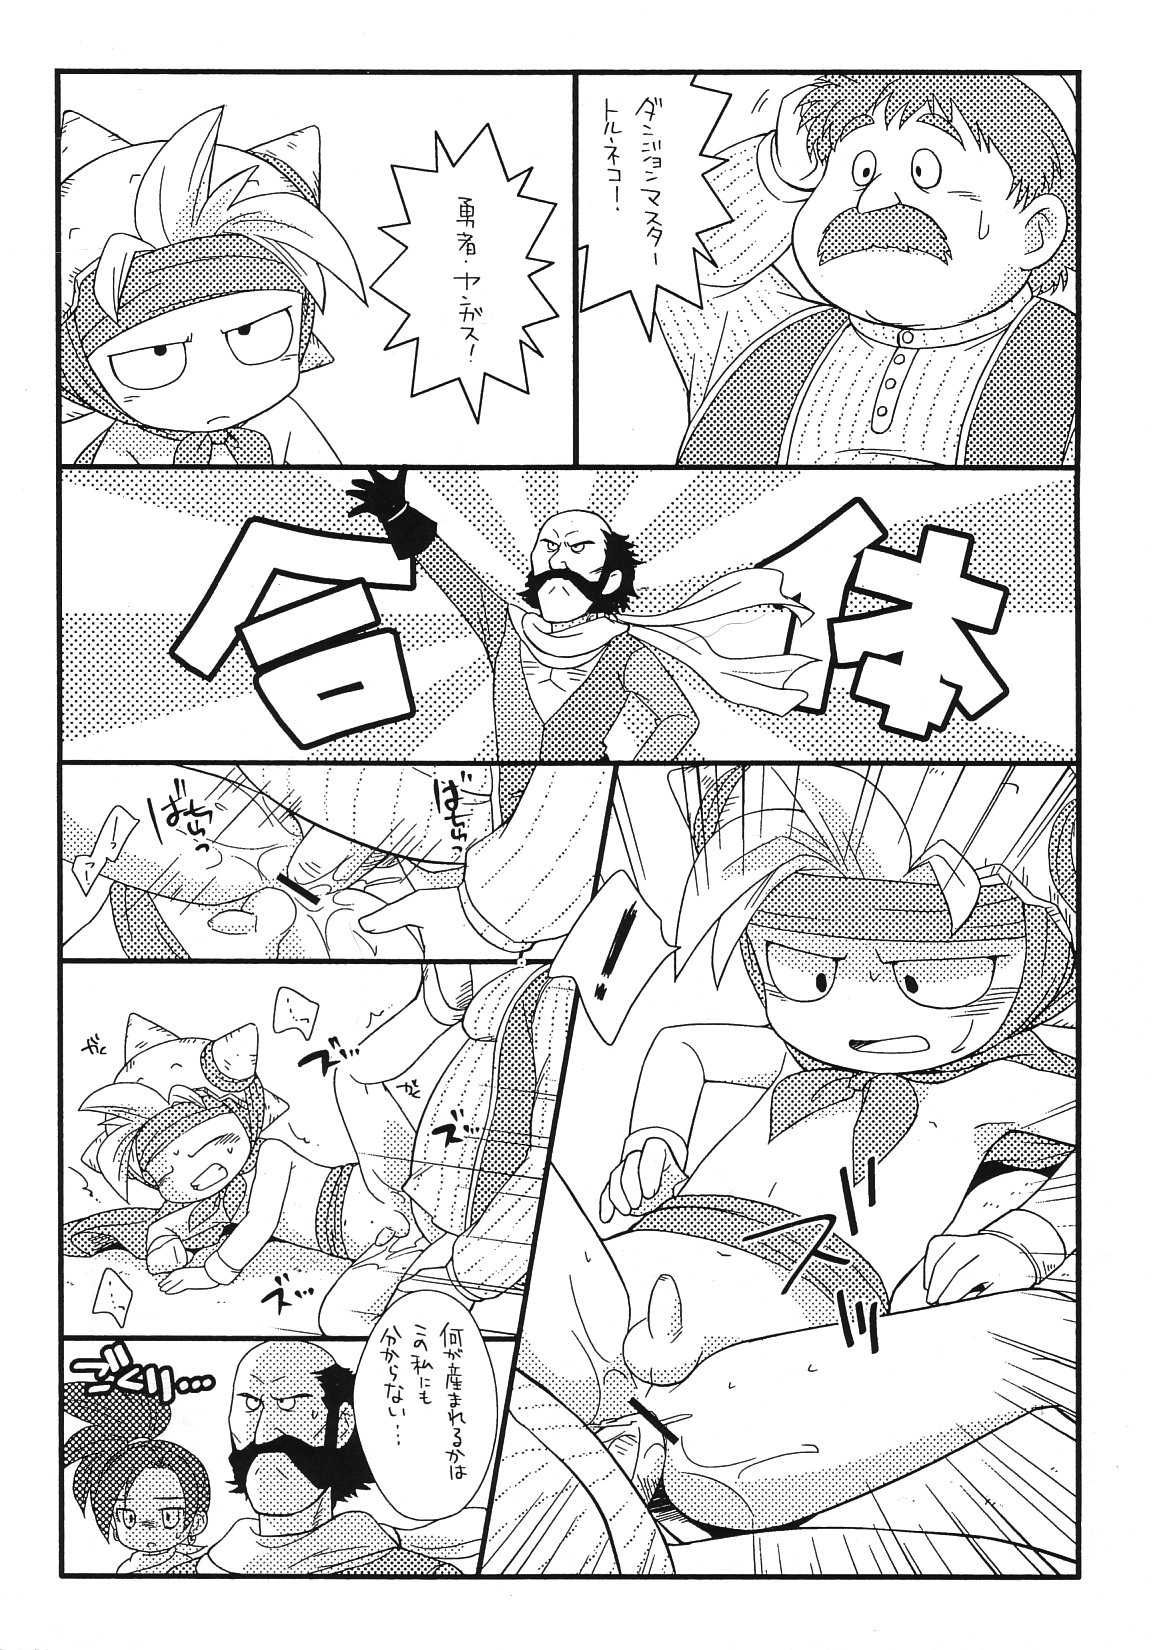 (Shotaket 11) [Tokuda (Ueda Yuu)] Touzen no You ni Haigou de (Dragon Quest VIII) page 2 full